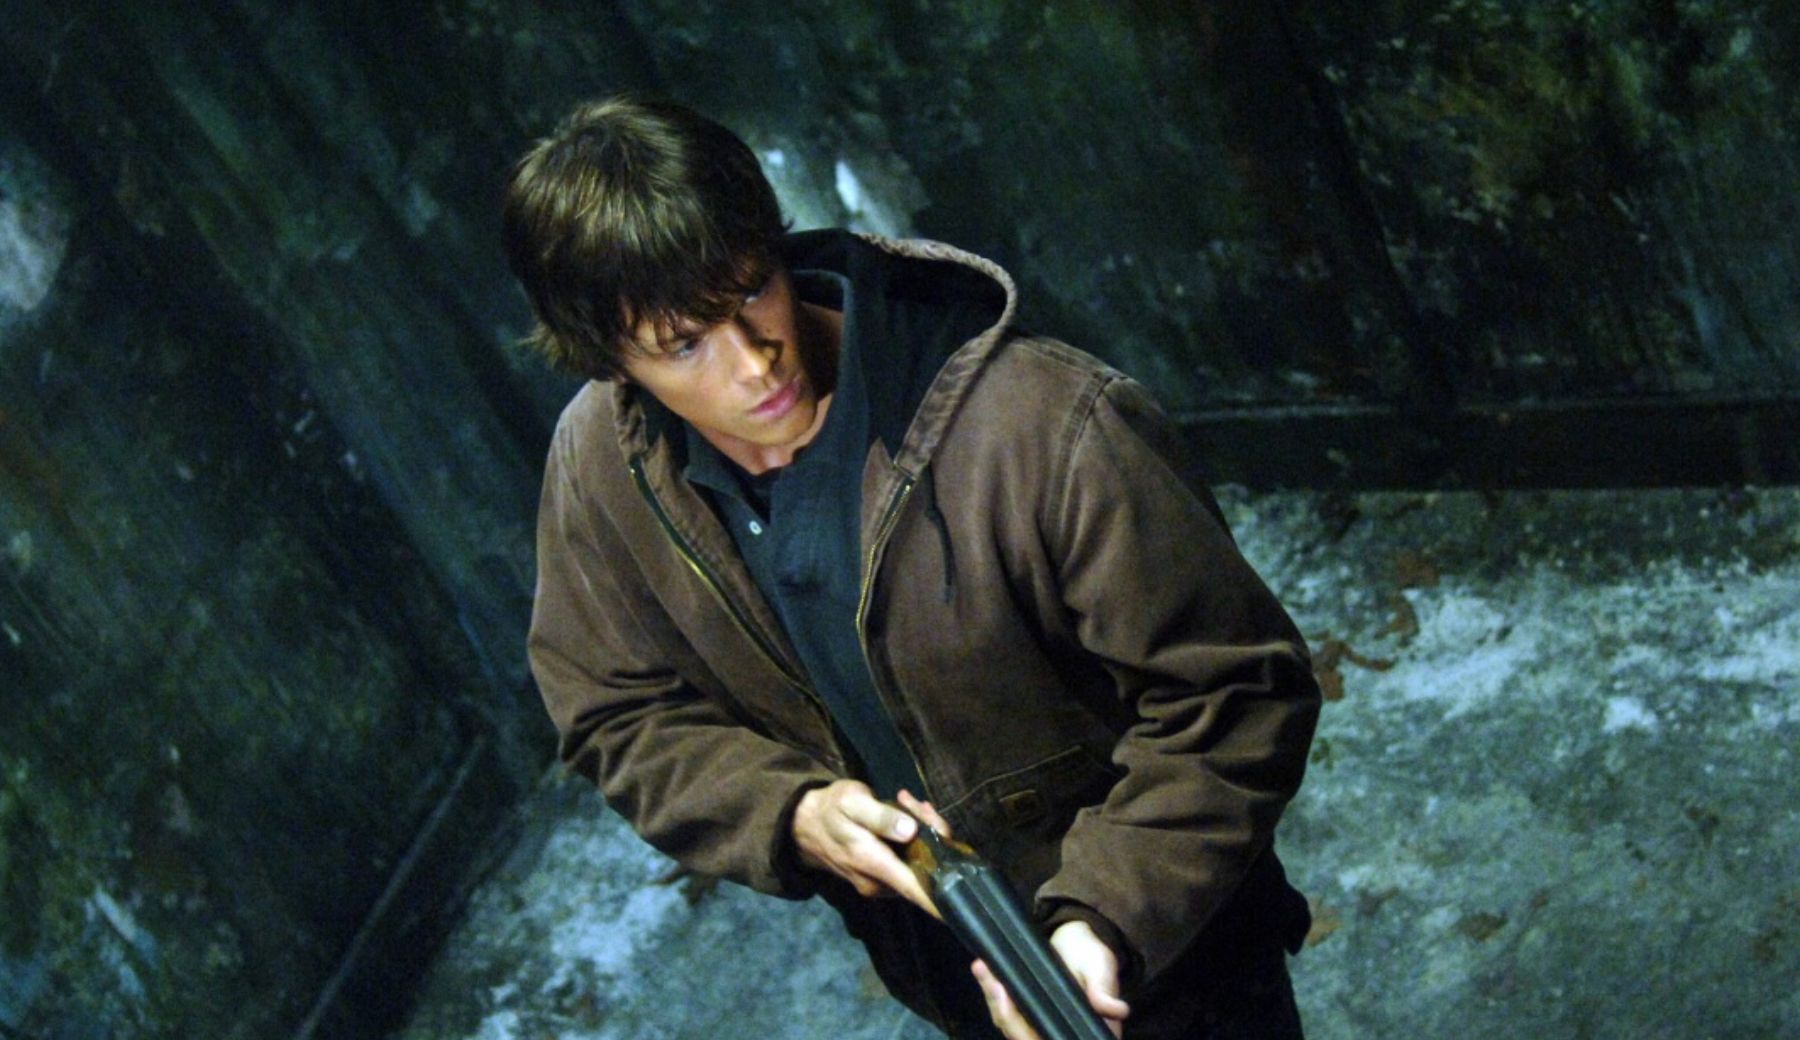 Jared Padalecki in Supernatural Episode Asylum